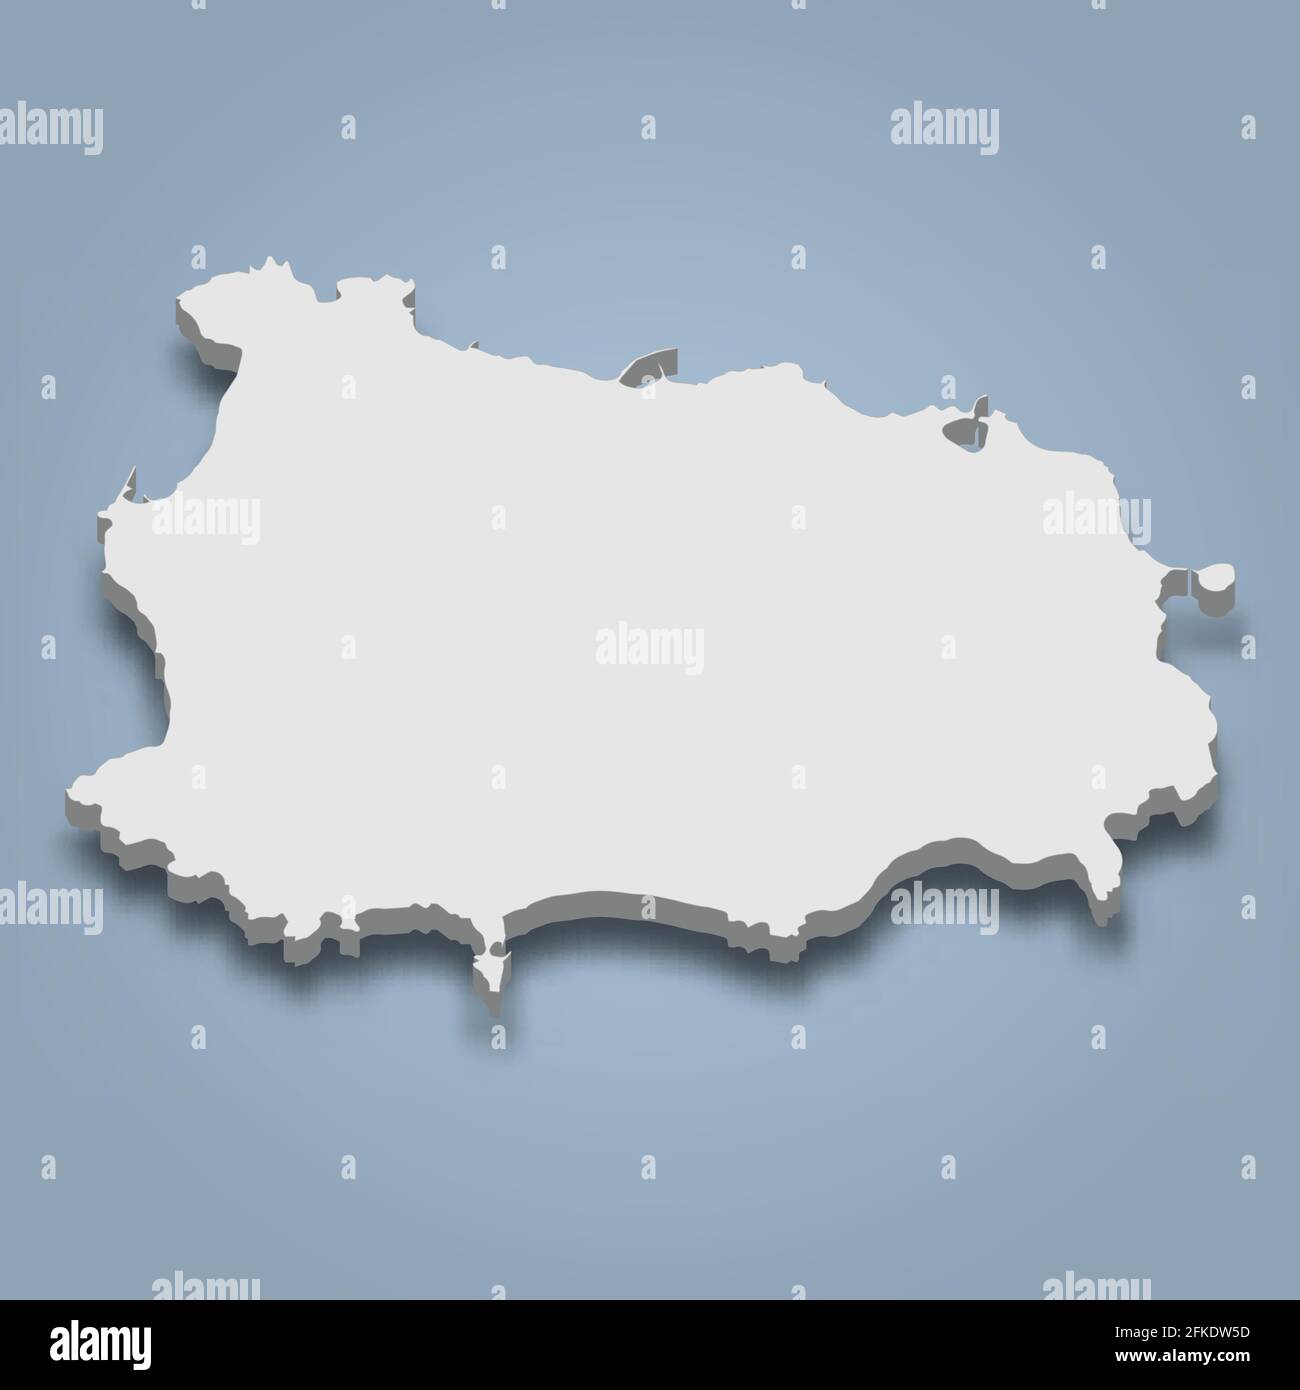 La carte isométrique 3d d'Ischia est une île en Italie, illustration vectorielle isolée Illustration de Vecteur